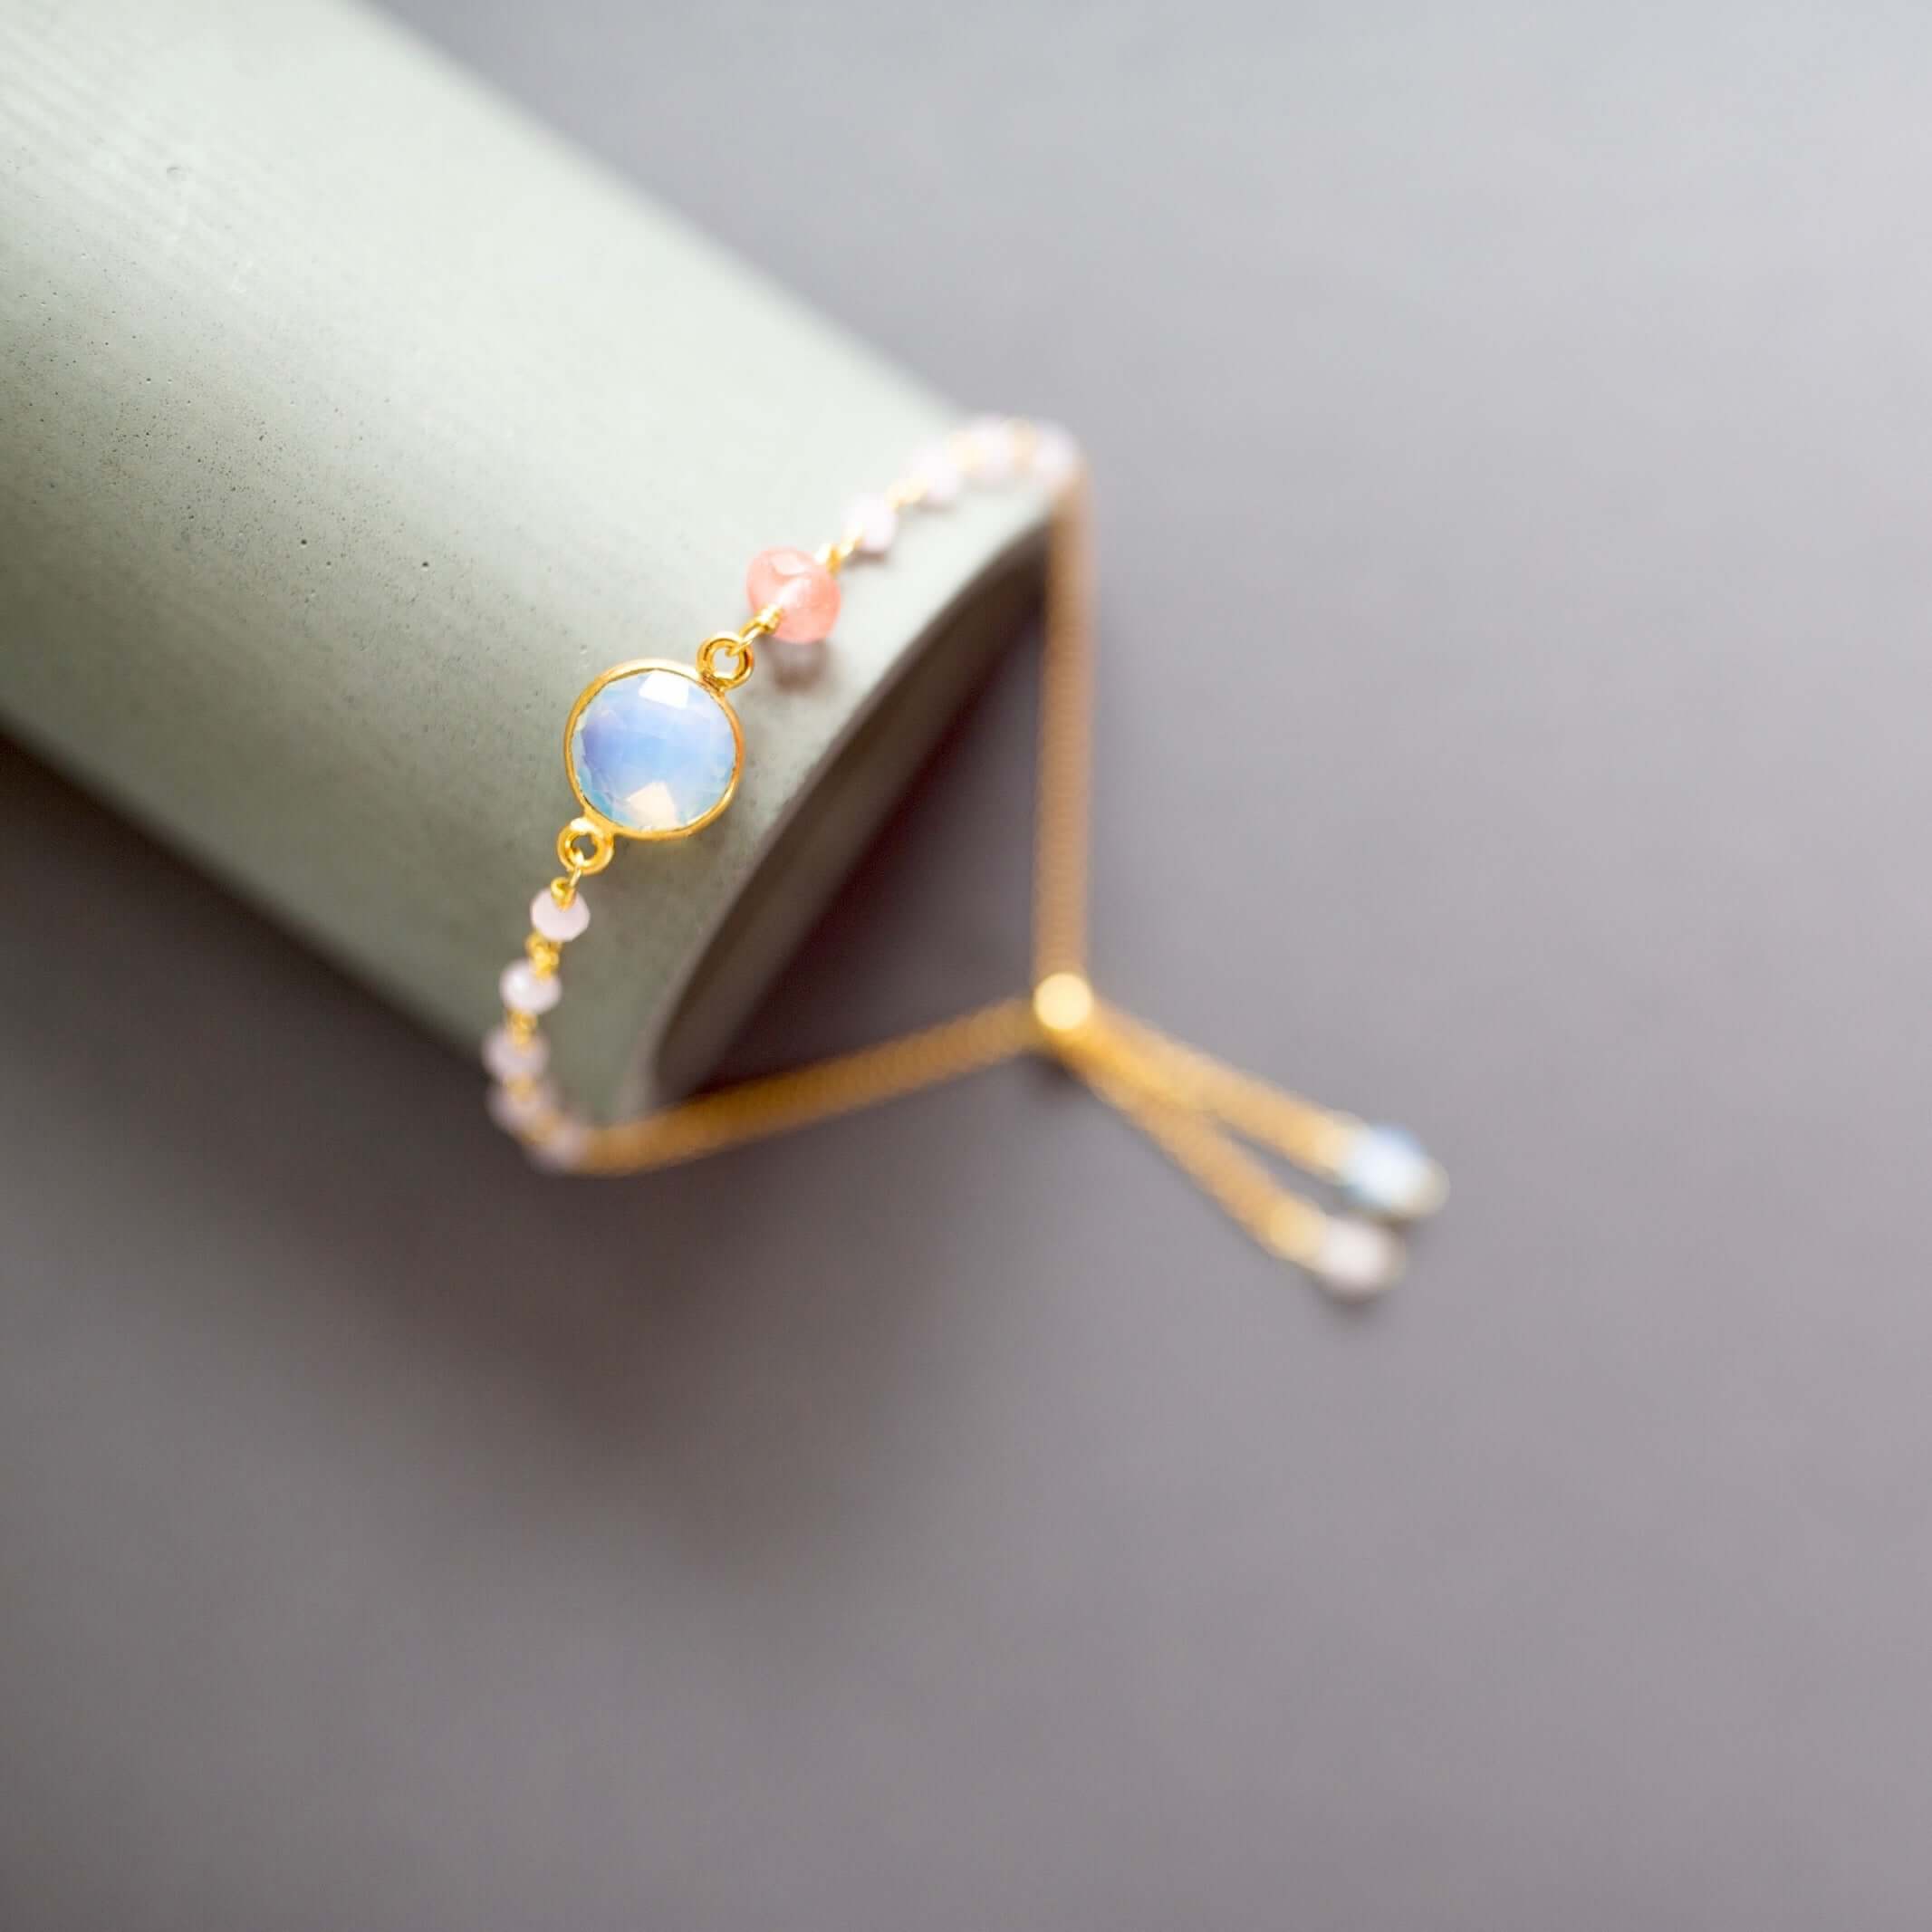 Opal Quartz Bracelet - Delicate Beauty for Your Wrist